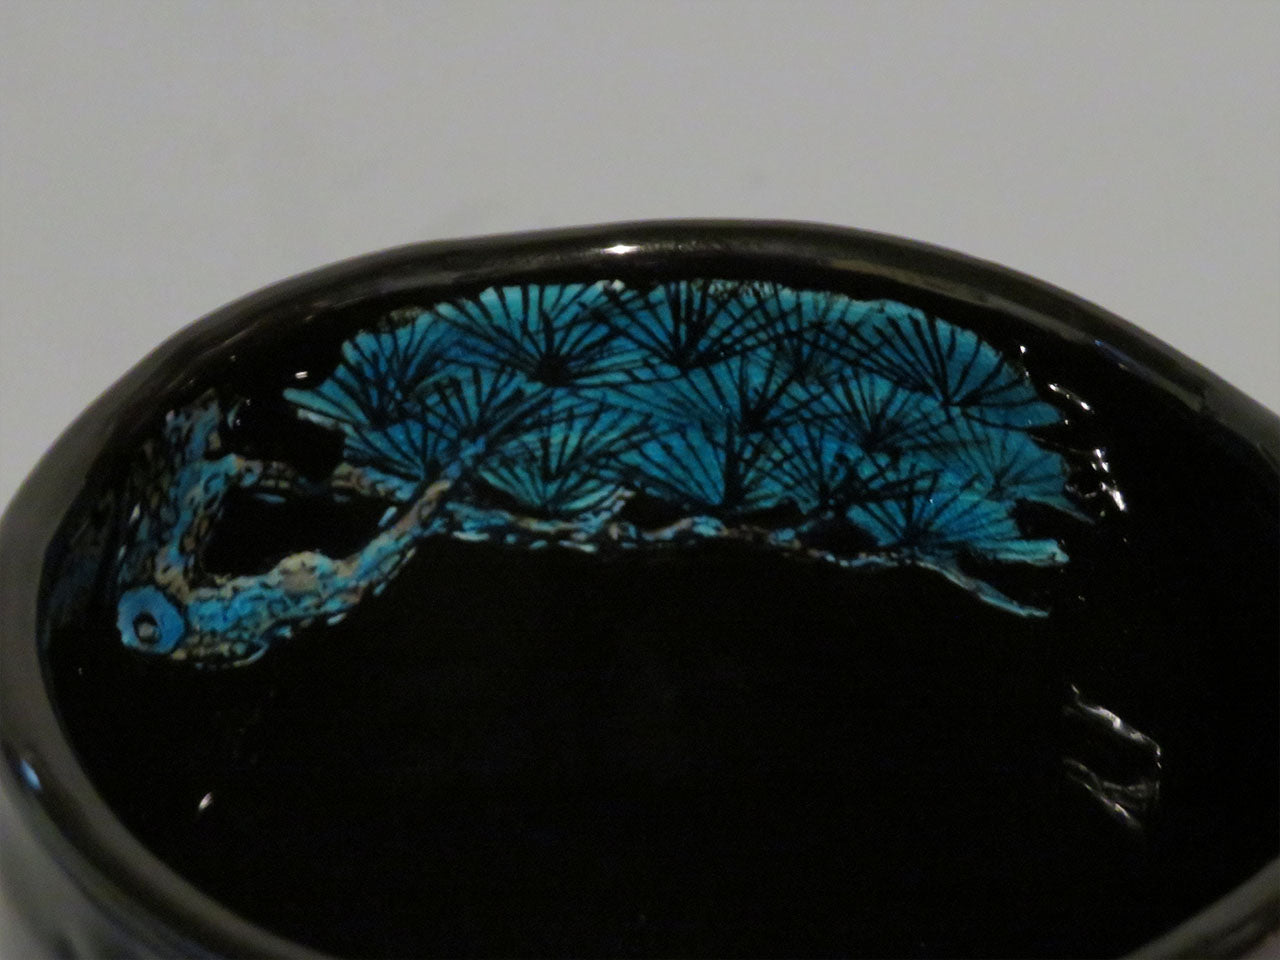 茶道用品 黑釉松波纹茶碗 手绘 山口义博 九谷烧 陶瓷器